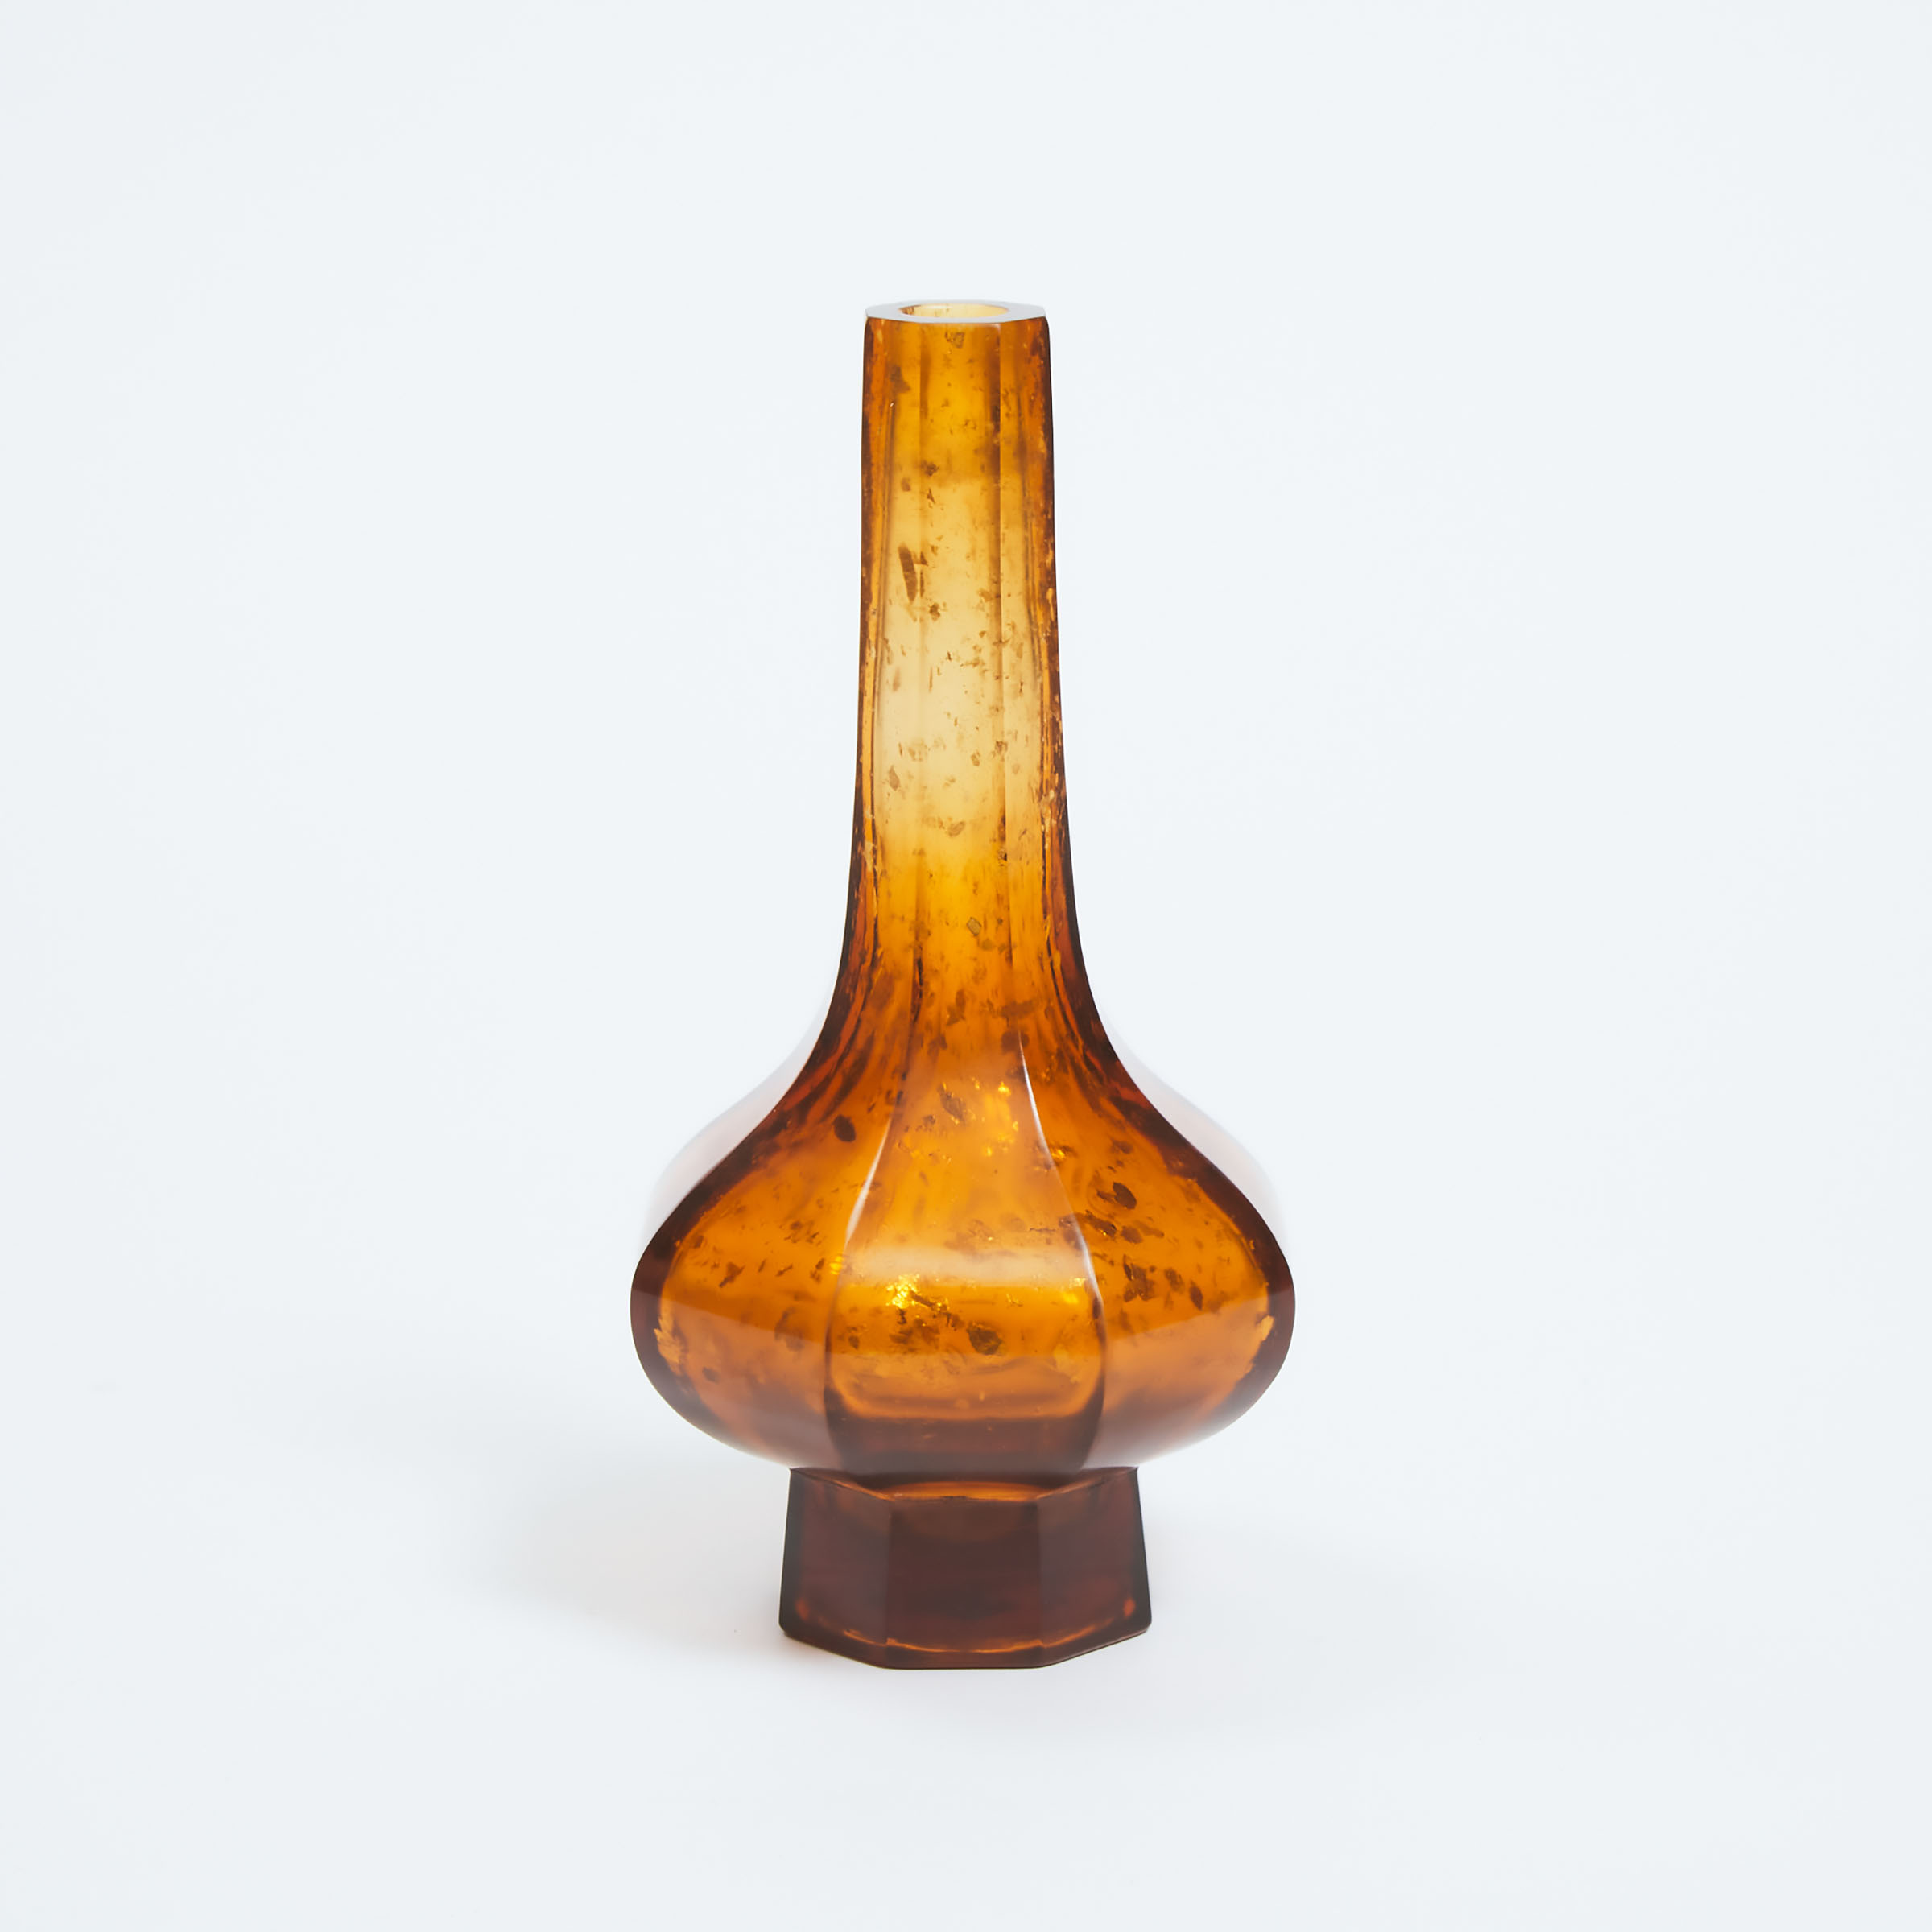 A Gold-Splashed Amber Glass Octagonal Bottle Vase, Qianlong Mark